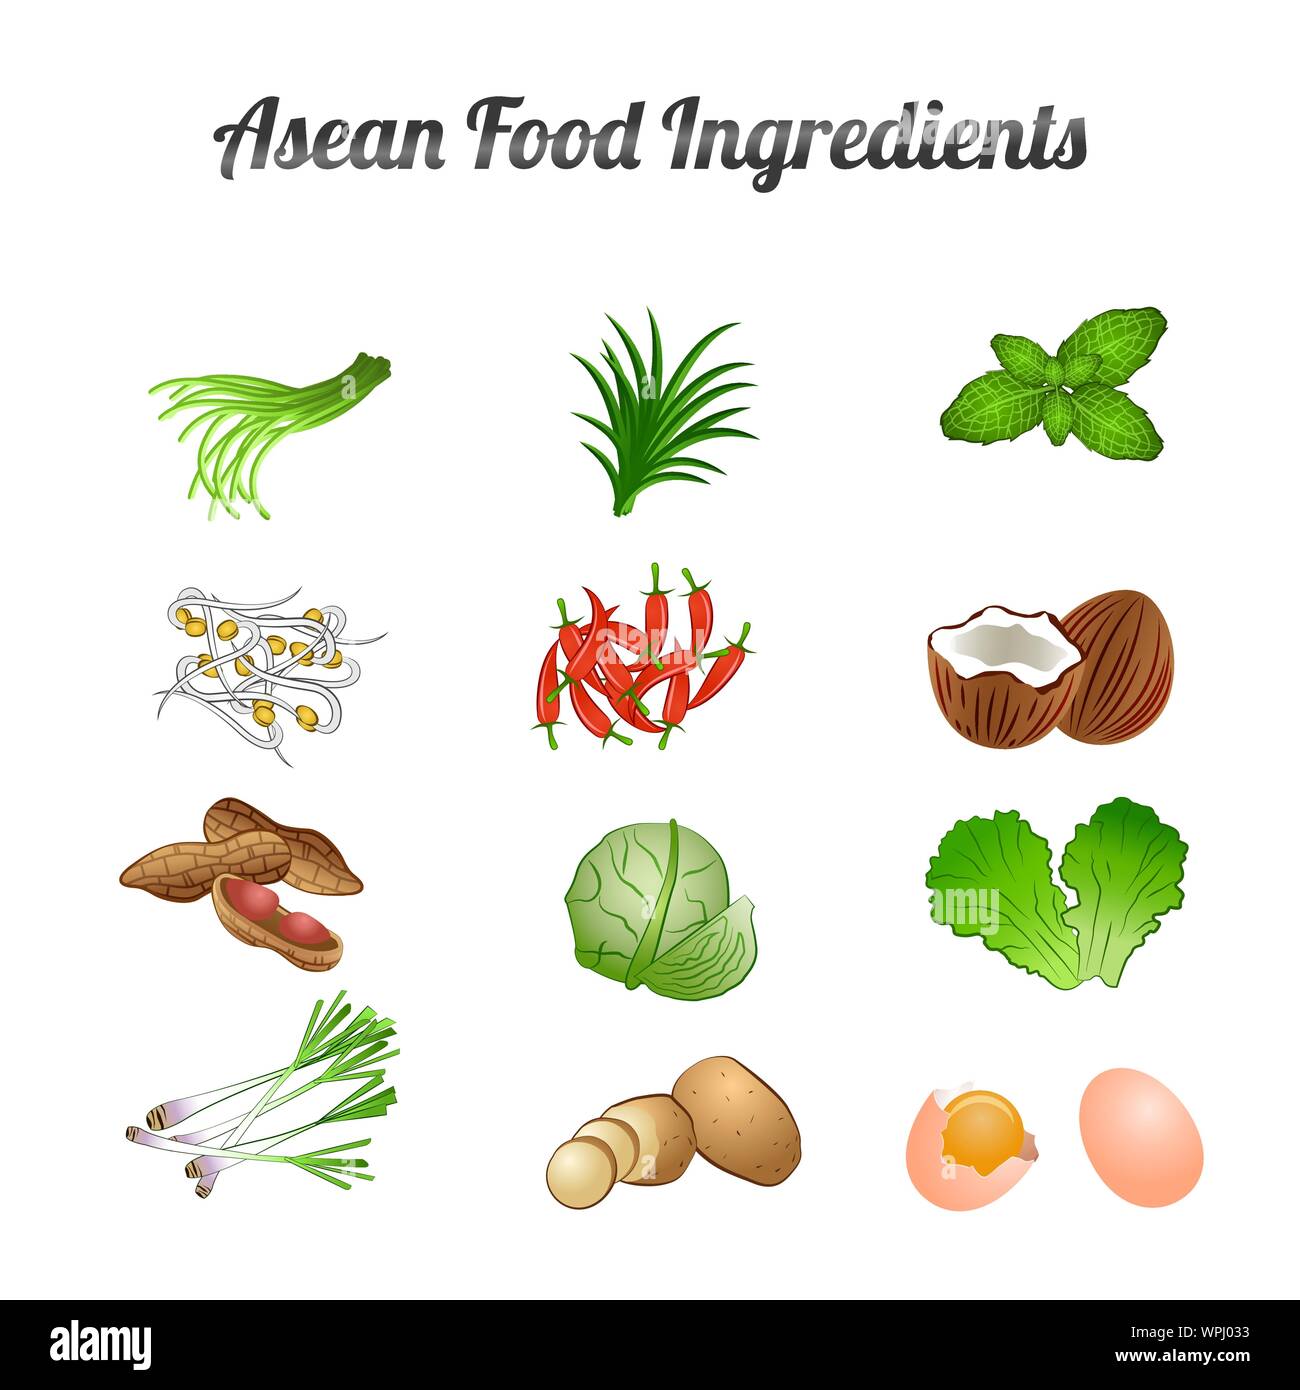 La ASEAN ingredientes alimentarios del conjunto incluyen verduras y carnes en gradiente cartoon diseño,ilustración vectorial Ilustración del Vector